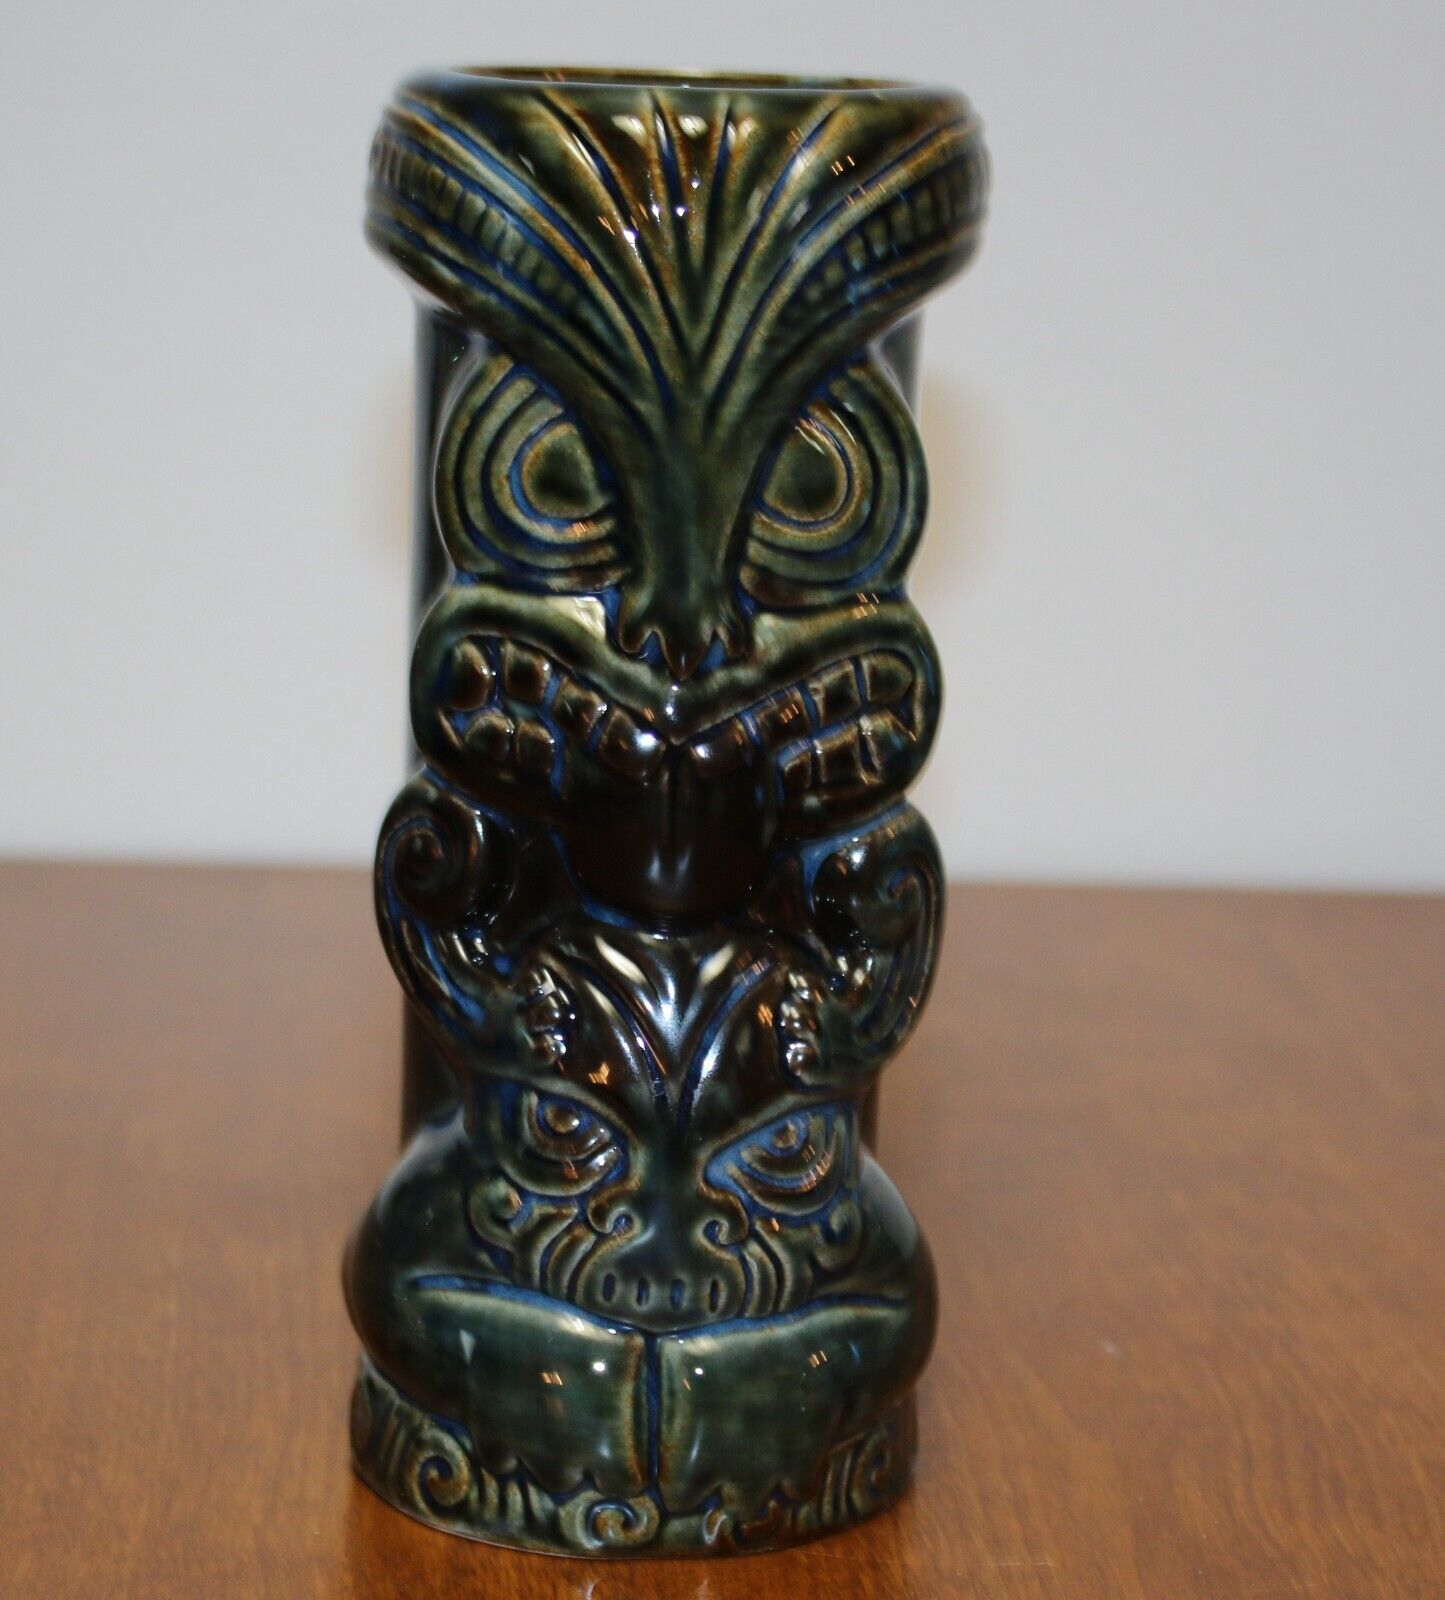 Tiki Totem Bar Mug Ceramic Vase 7” Green Brown Blue; Two Figures